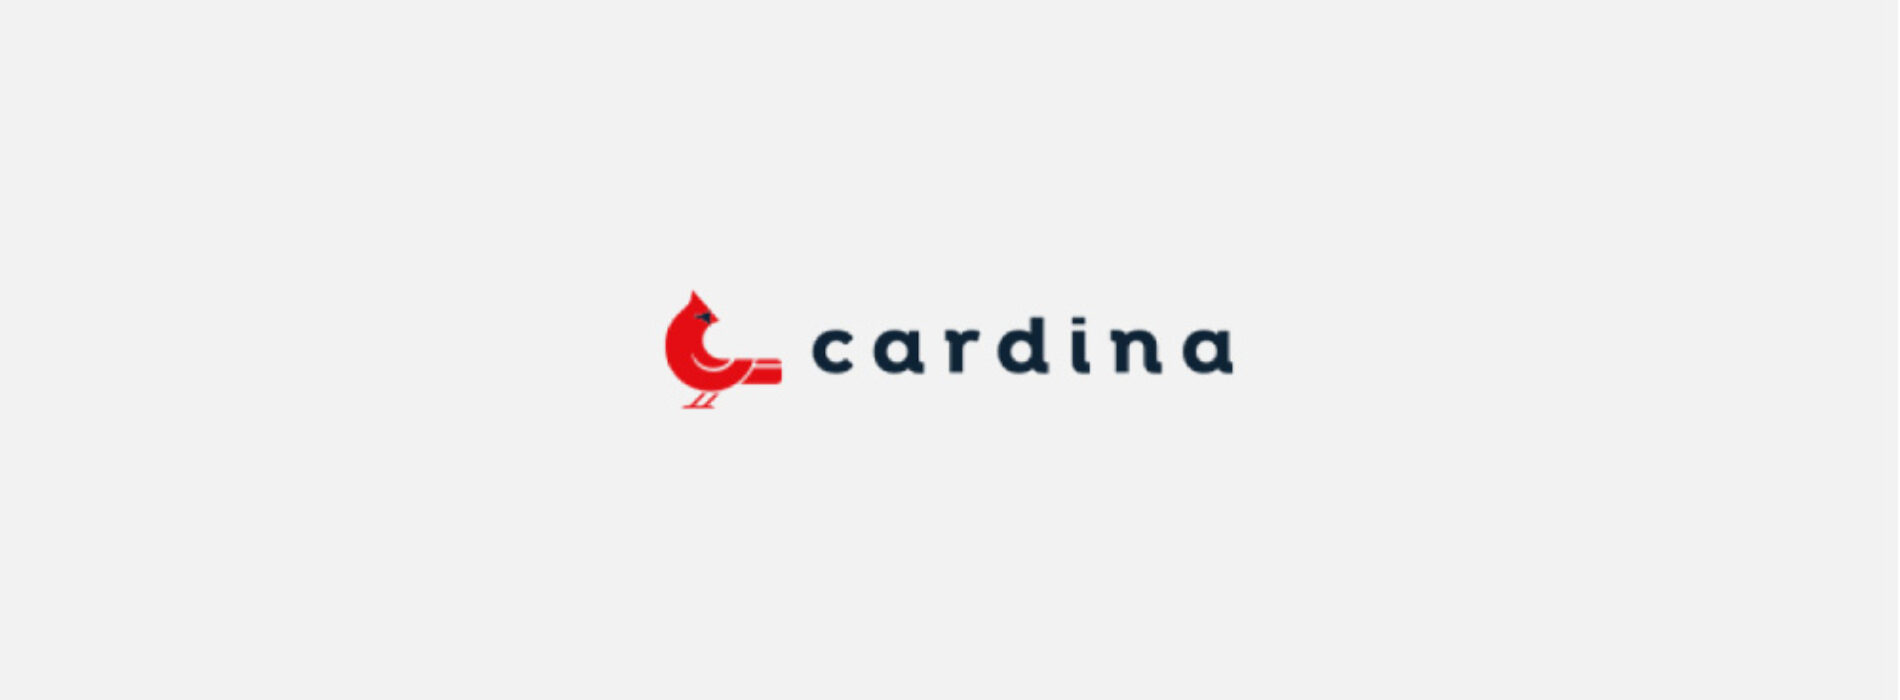 Cardina – sprawdziliśmy ofertę i opinie klientów